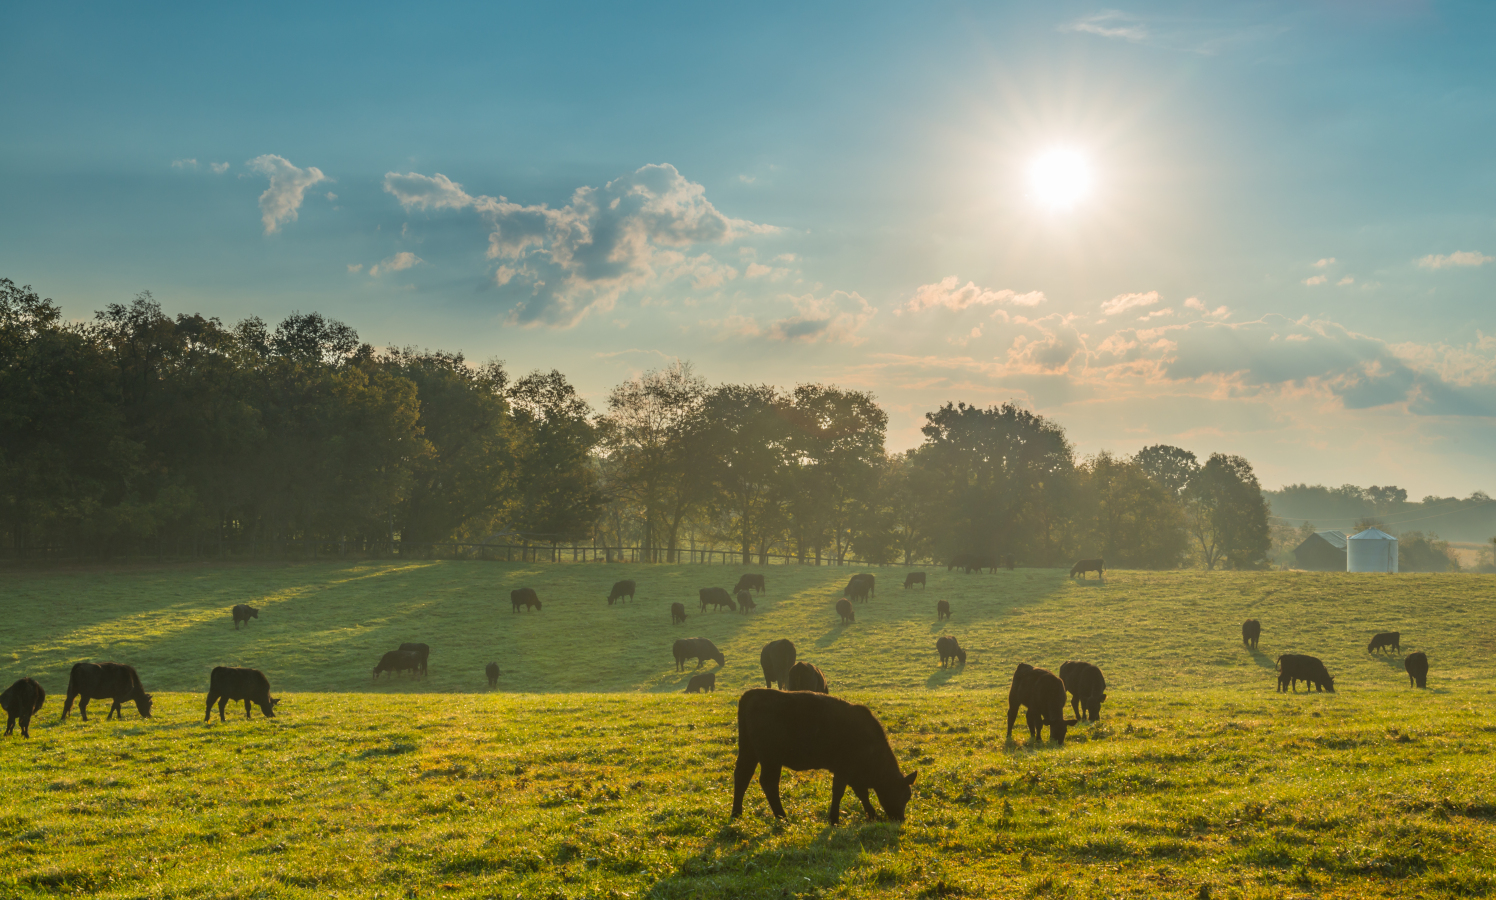 饲养草饲牛肉需要可持续和传统的农业方法。克雷格·科林（Craig Corin）在爱荷华州750英亩的家庭农场找到了一种平衡的方法。